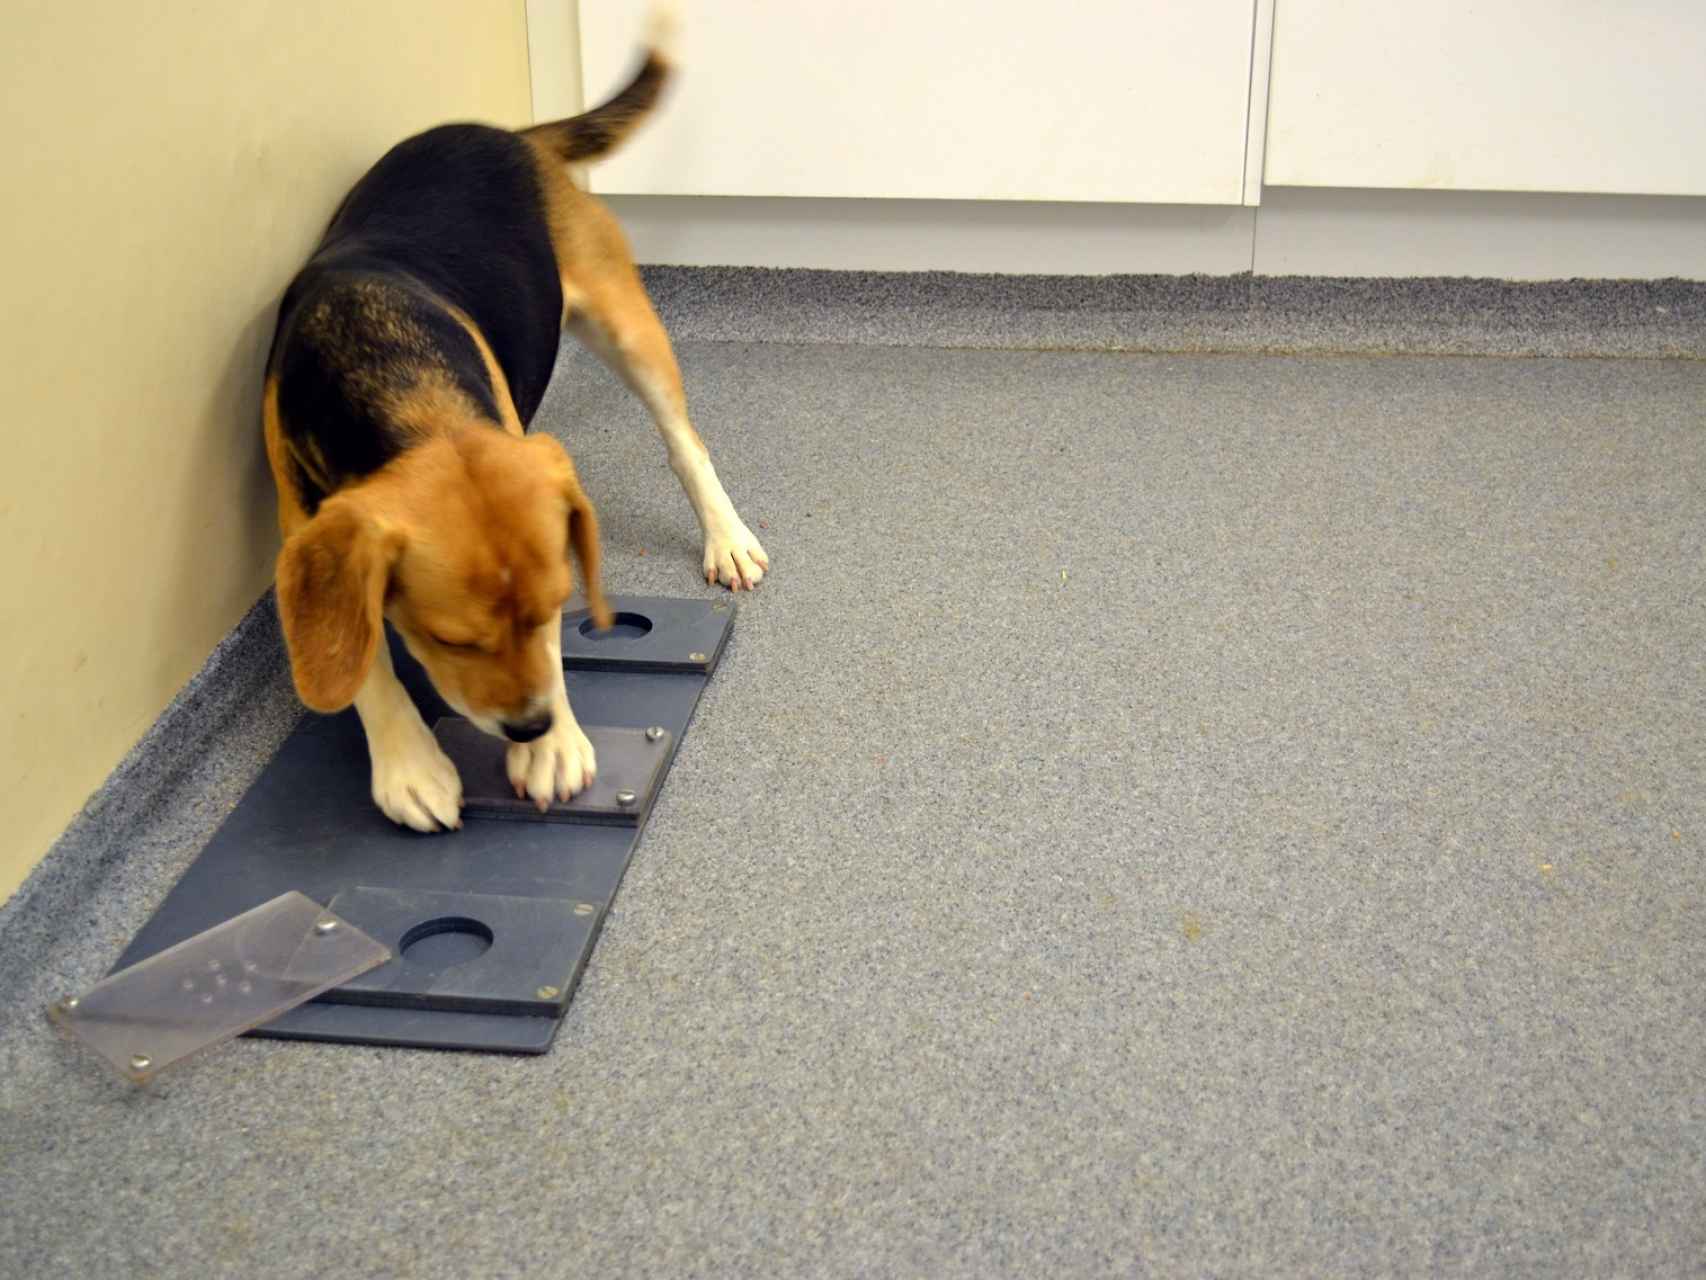 Un beagle tratando de resolver un rompecabezas.